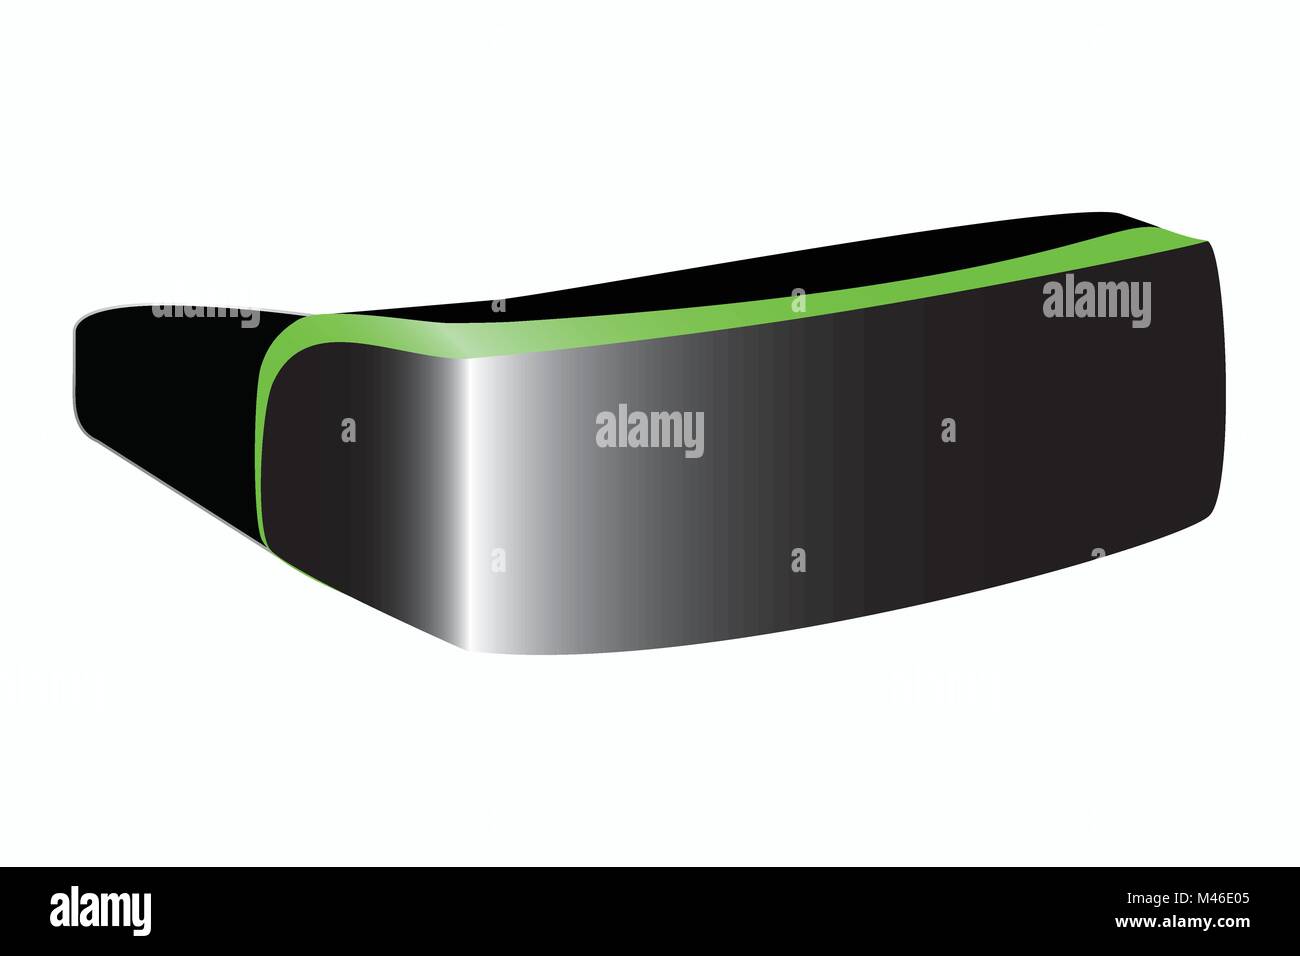 Illustration de lunettes de réalité virtuelle, vecteur de casque VR/ la technologie de la réalité virtuelle VR/ visualisation/ expérience simulée par ordinateur Illustration de Vecteur